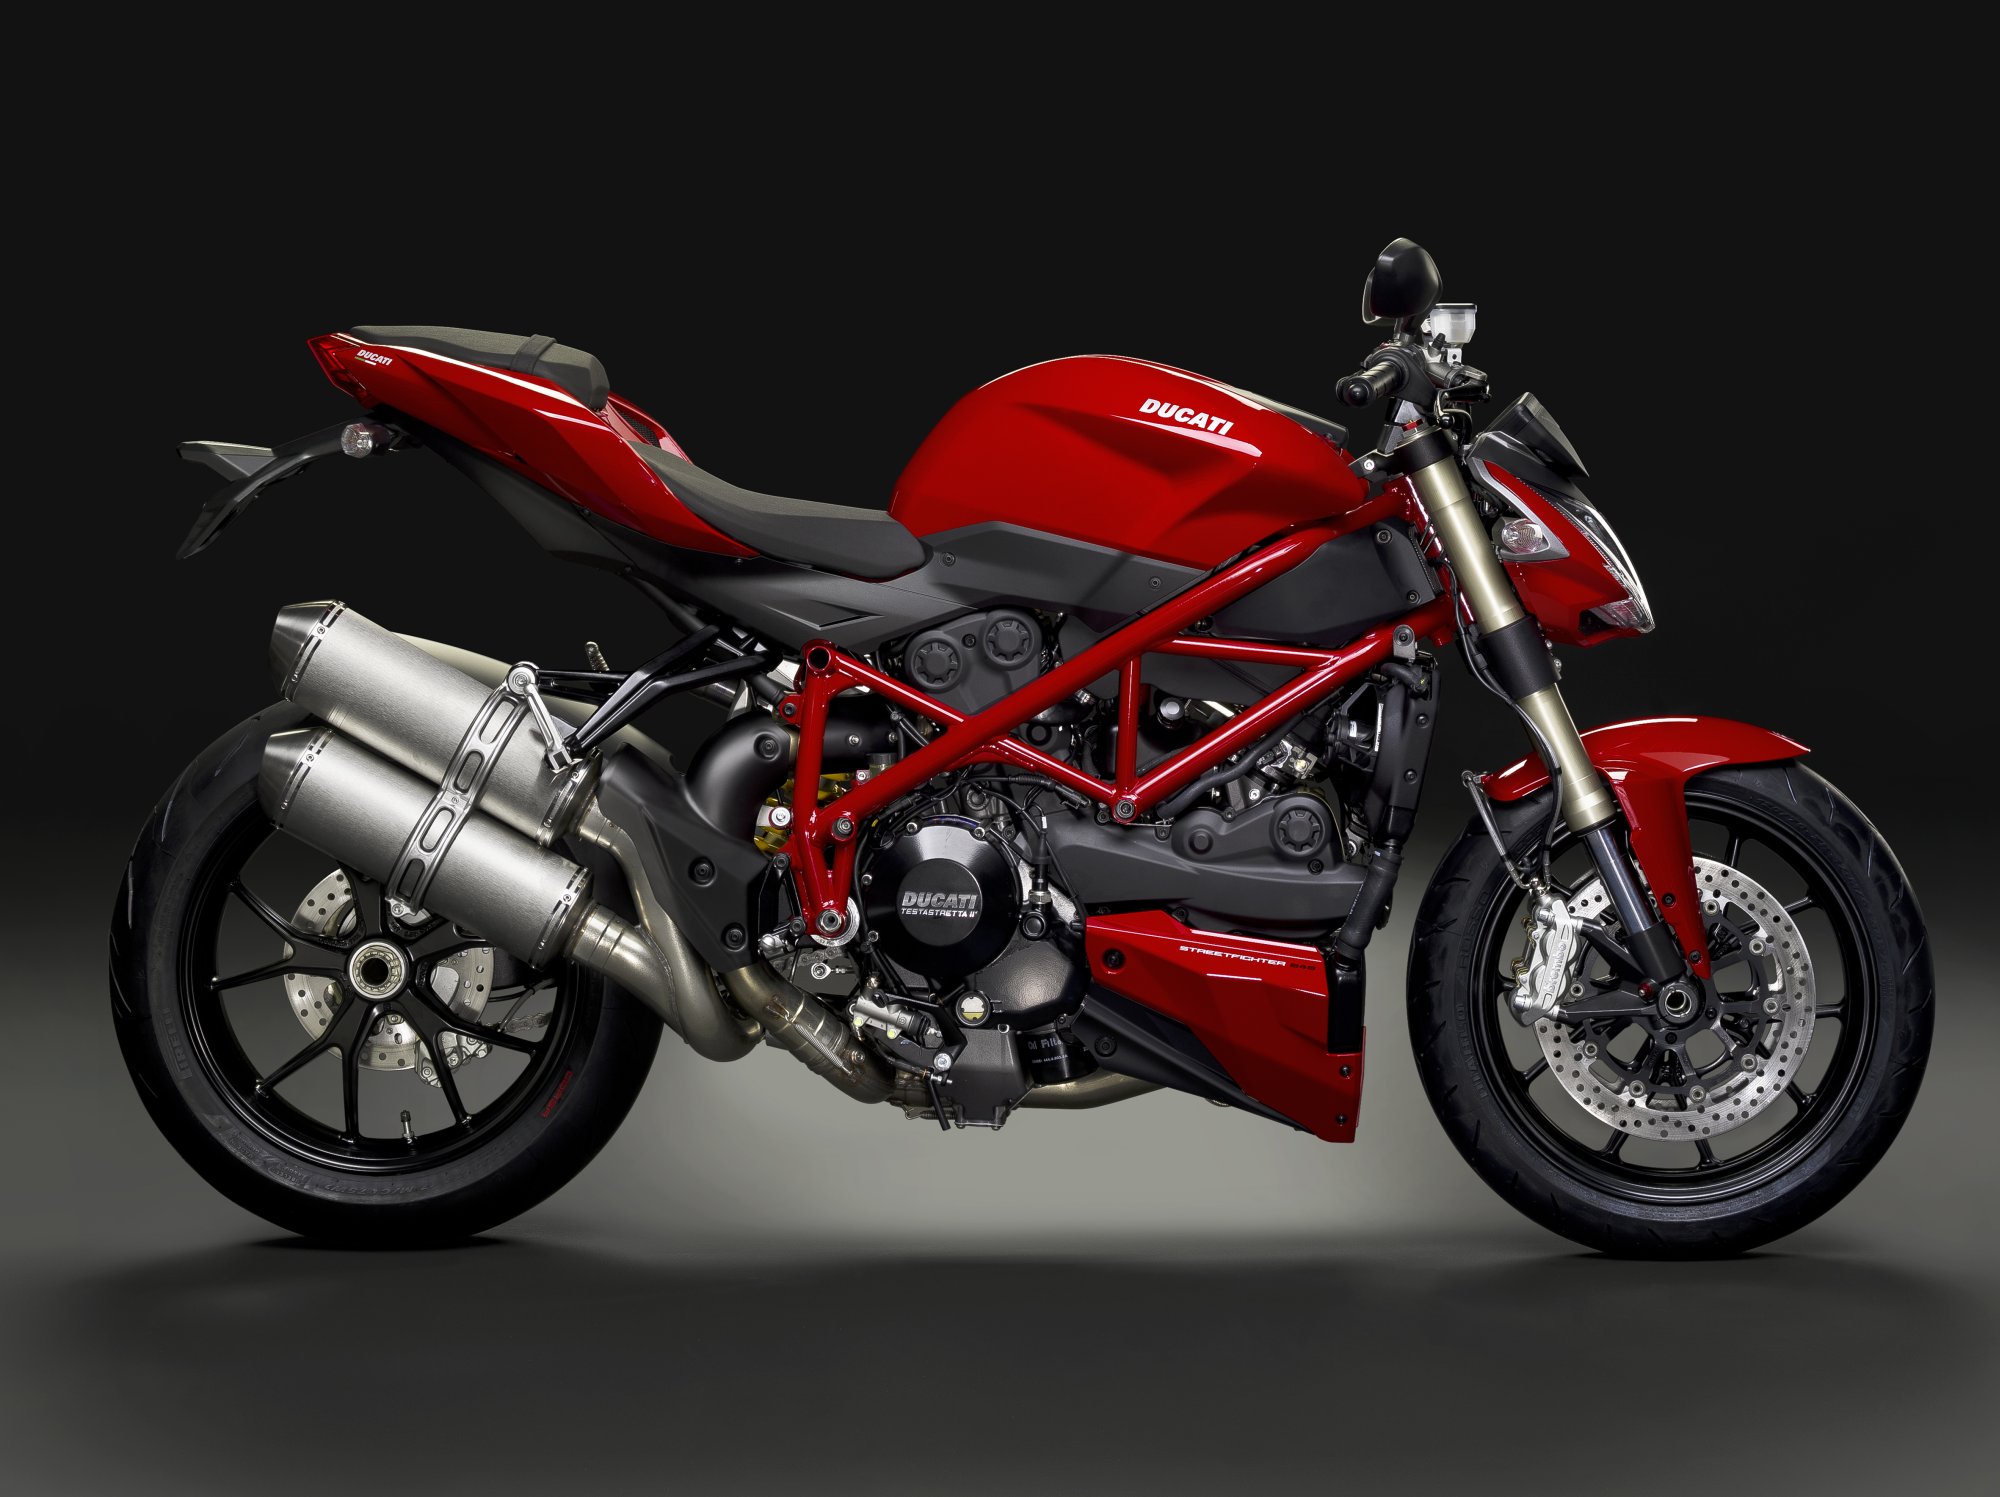 Motorrad Gaszug Satz Xm2 f. Ducati 848 848.3213.96.04-00 Motorrad